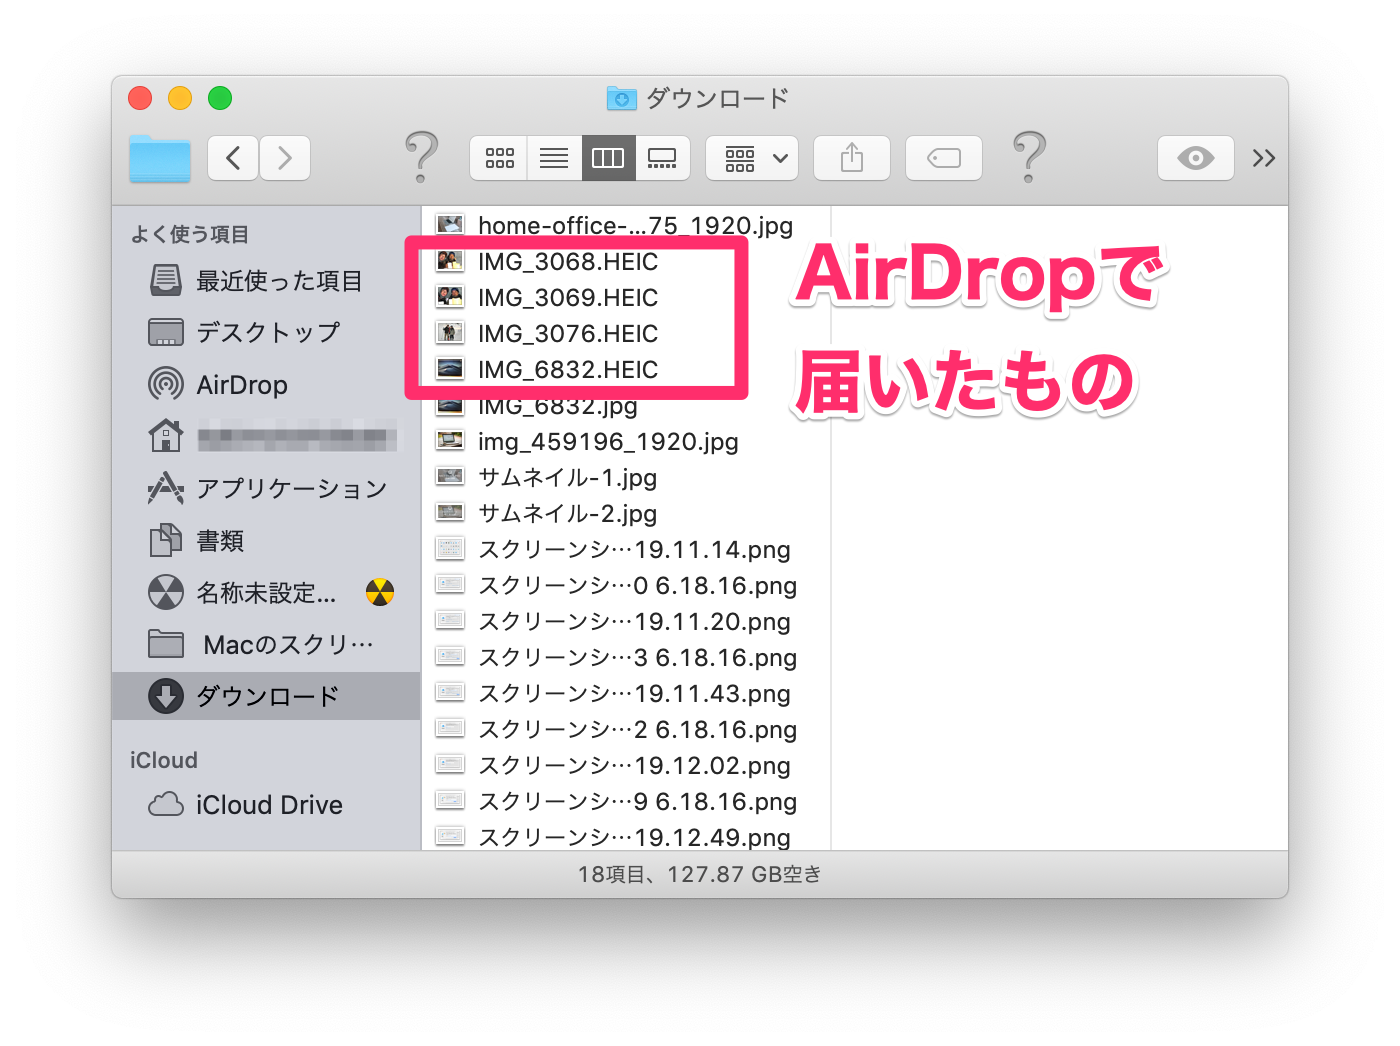 Macでairdrop受信したファイルの保存先を変更できるか 寝ながら投資